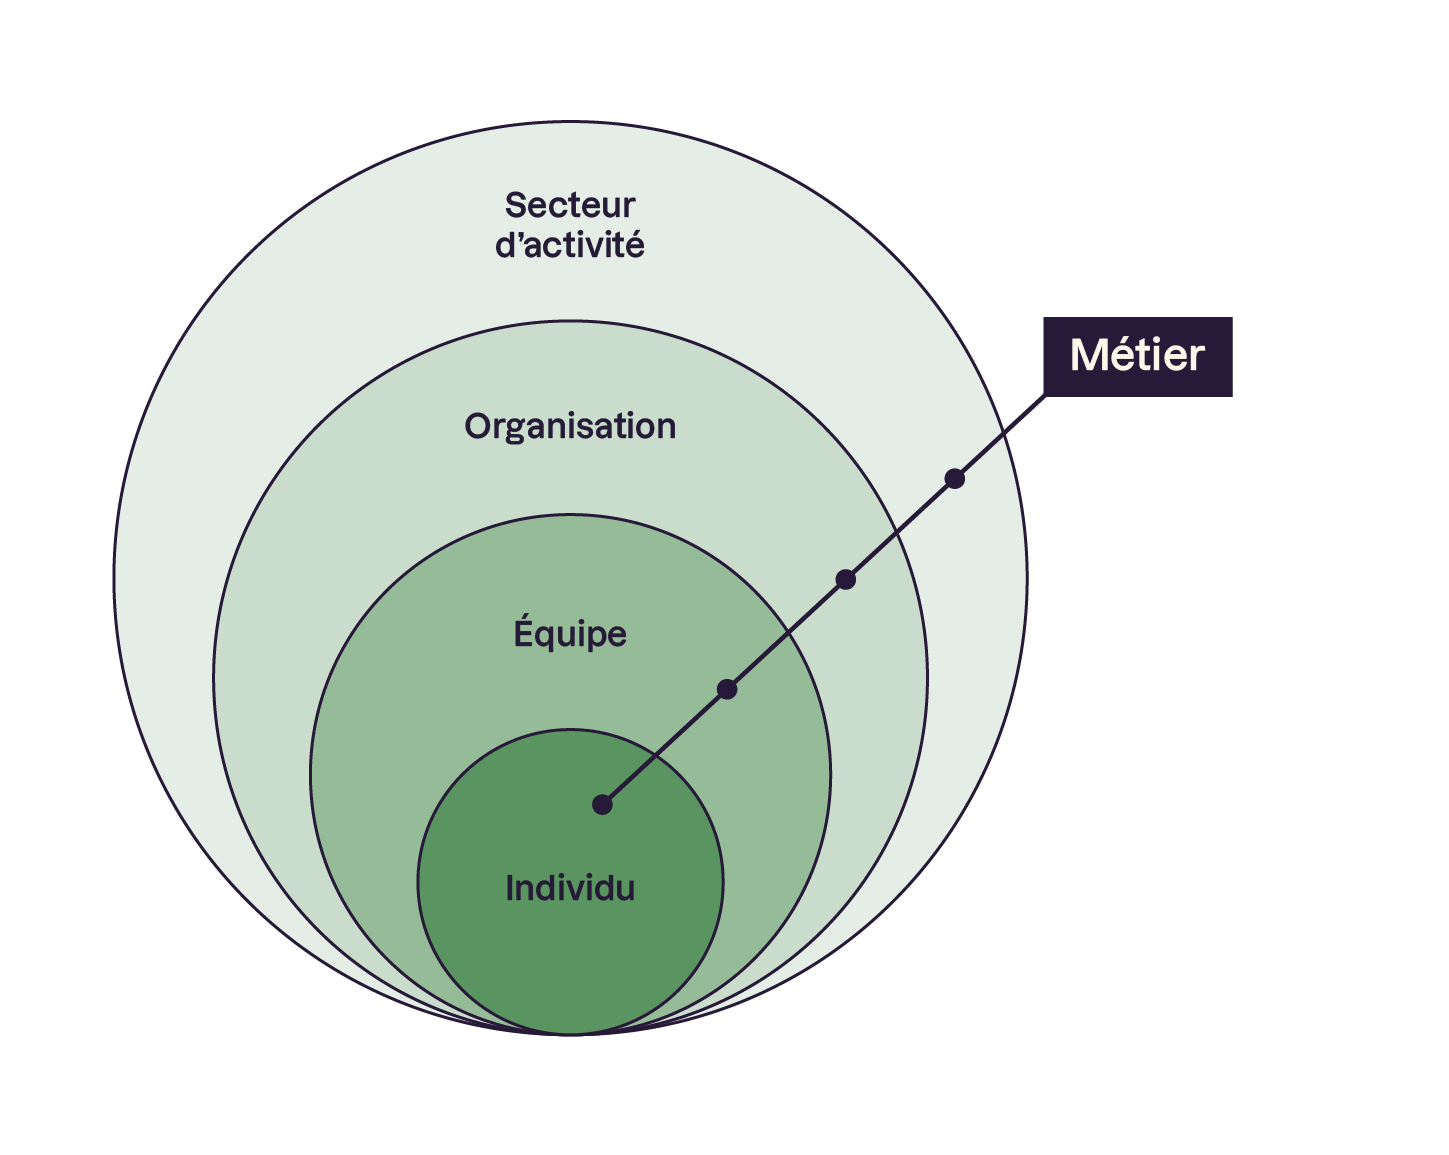 Plusieurs cercles imbriqués avec rédigé dedans, du plus petit au plus grand : individu, équipe, organisation, secteur d'activité. Et pour chaque cercle le terme de métier et précisé